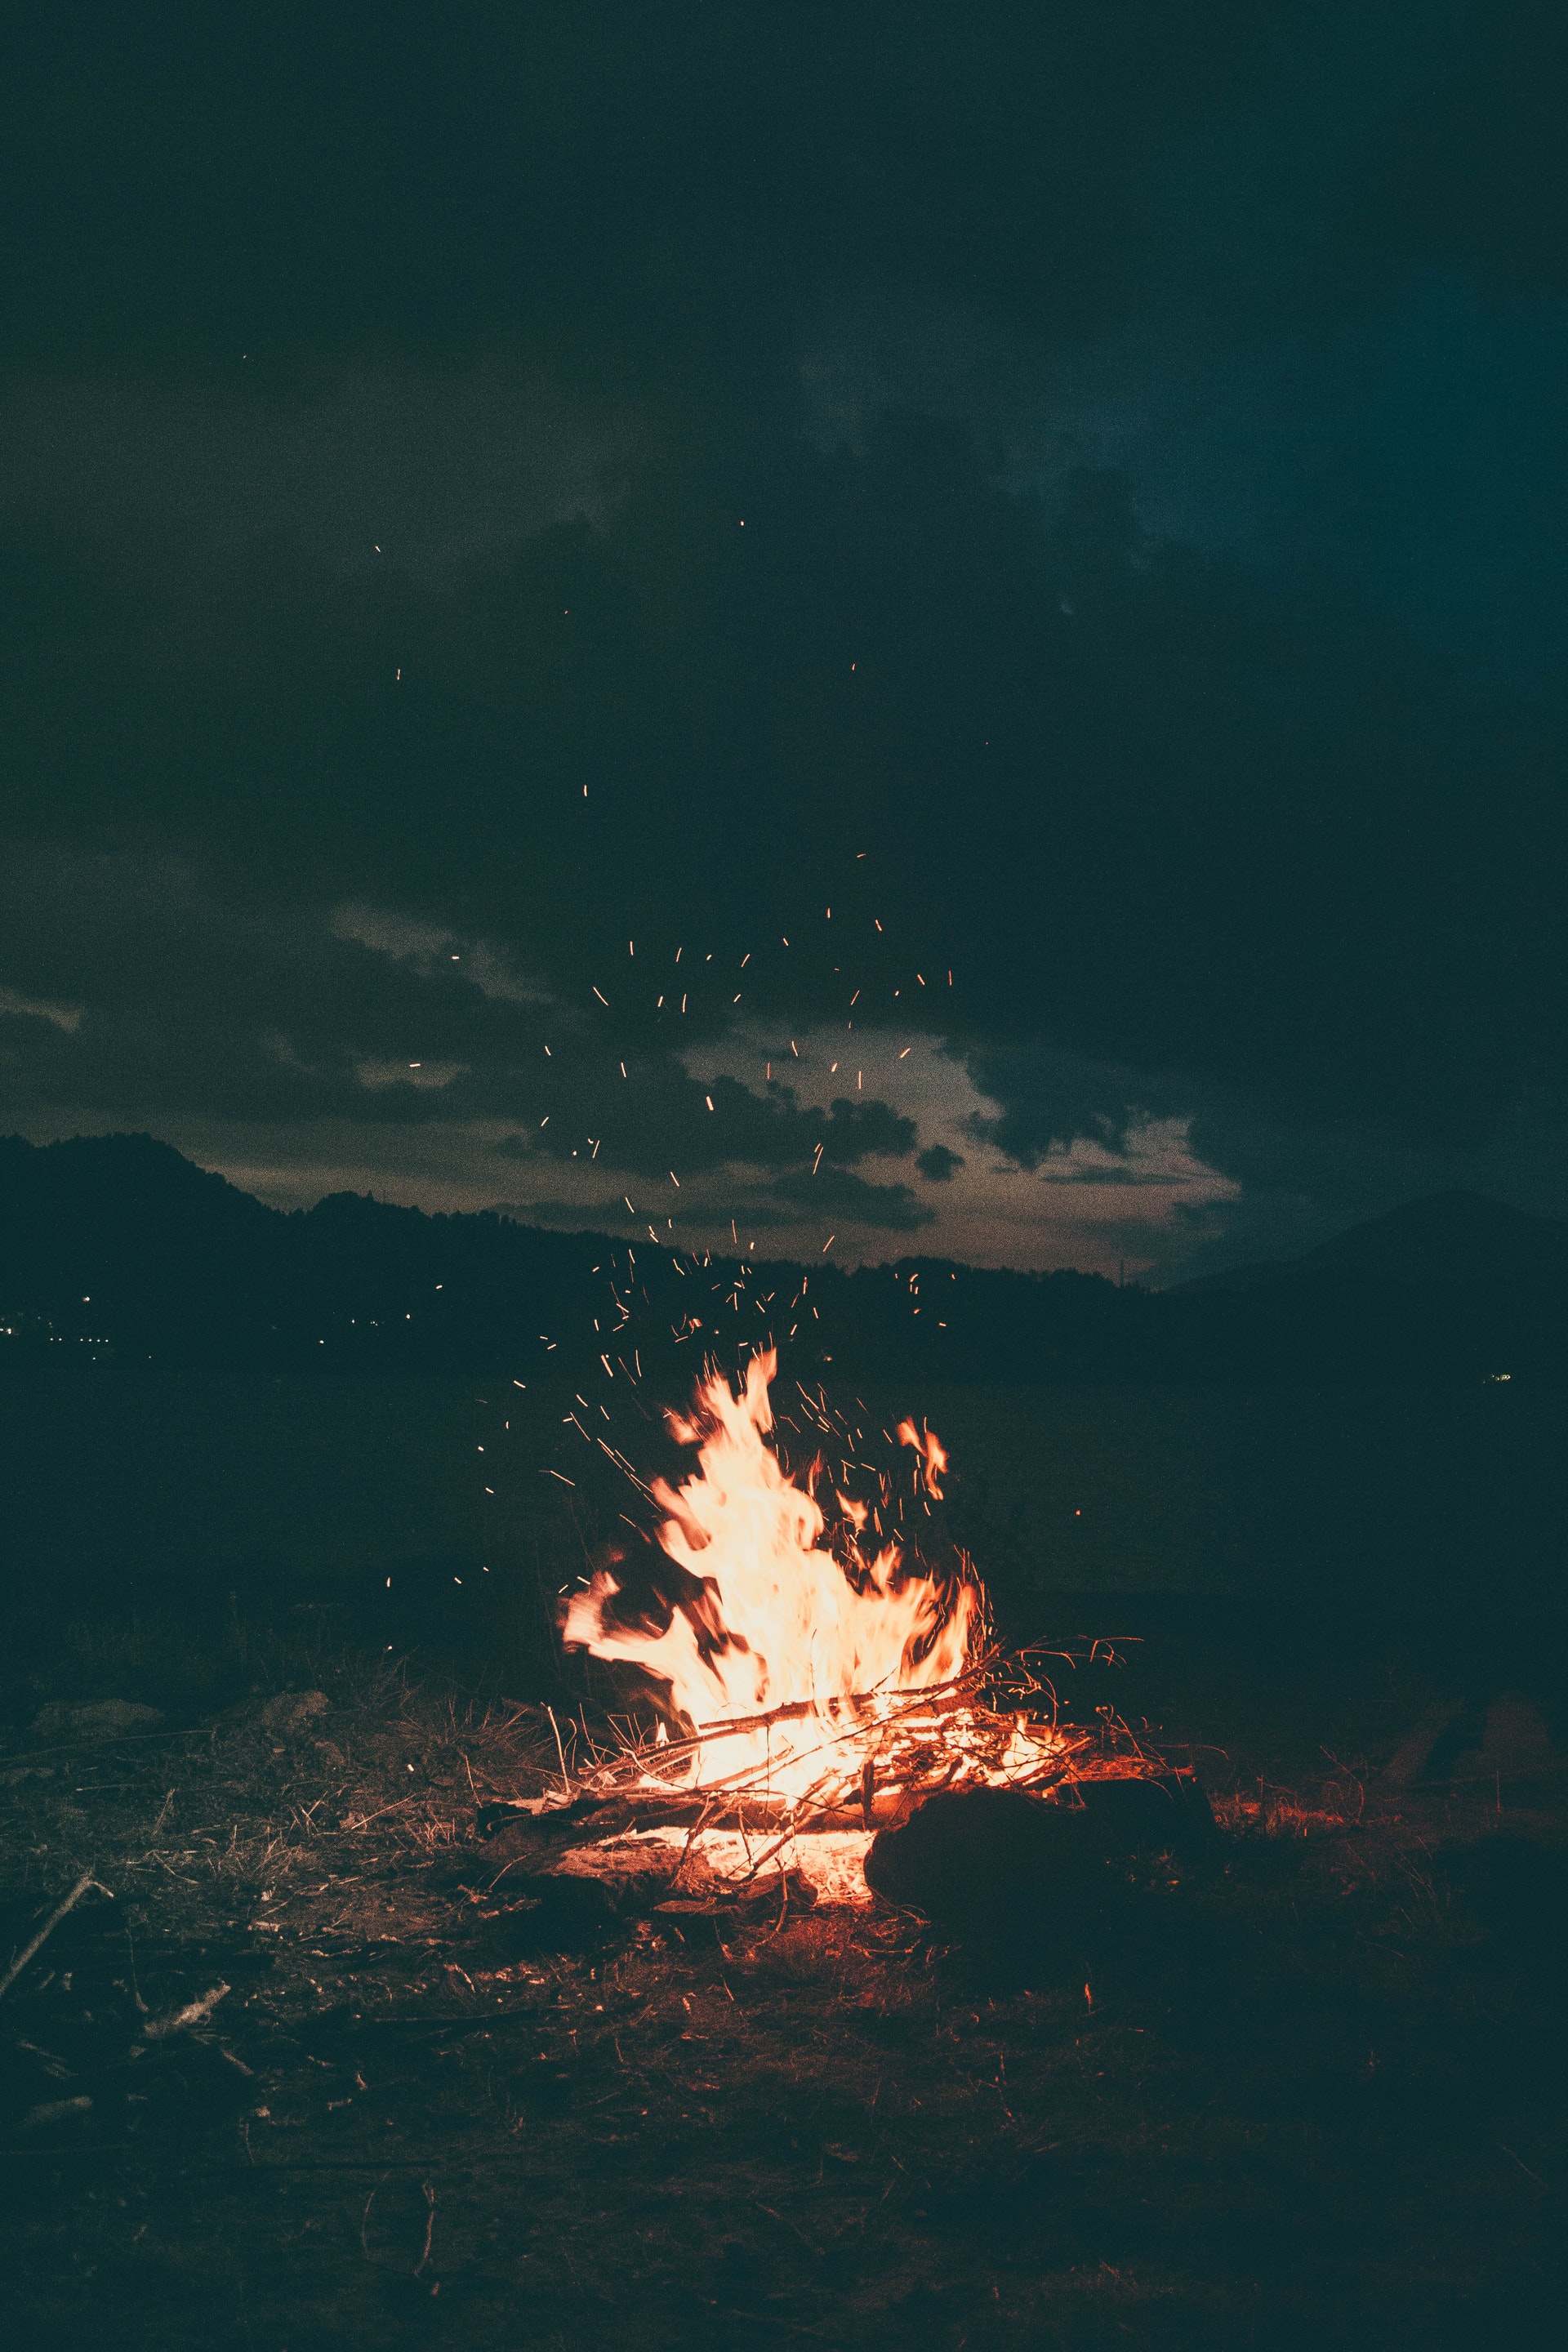 Picture of a lit bonfire.